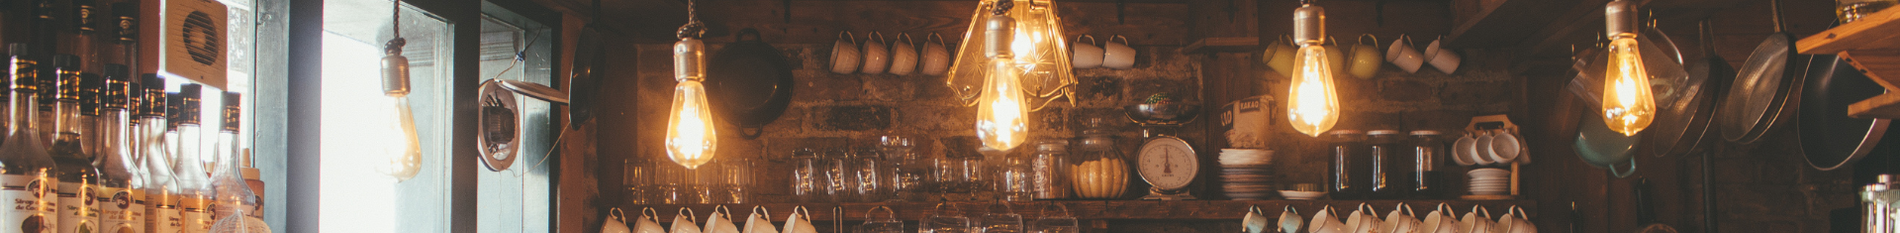 Blog-Banner-lighting-strategies-for-restaurants